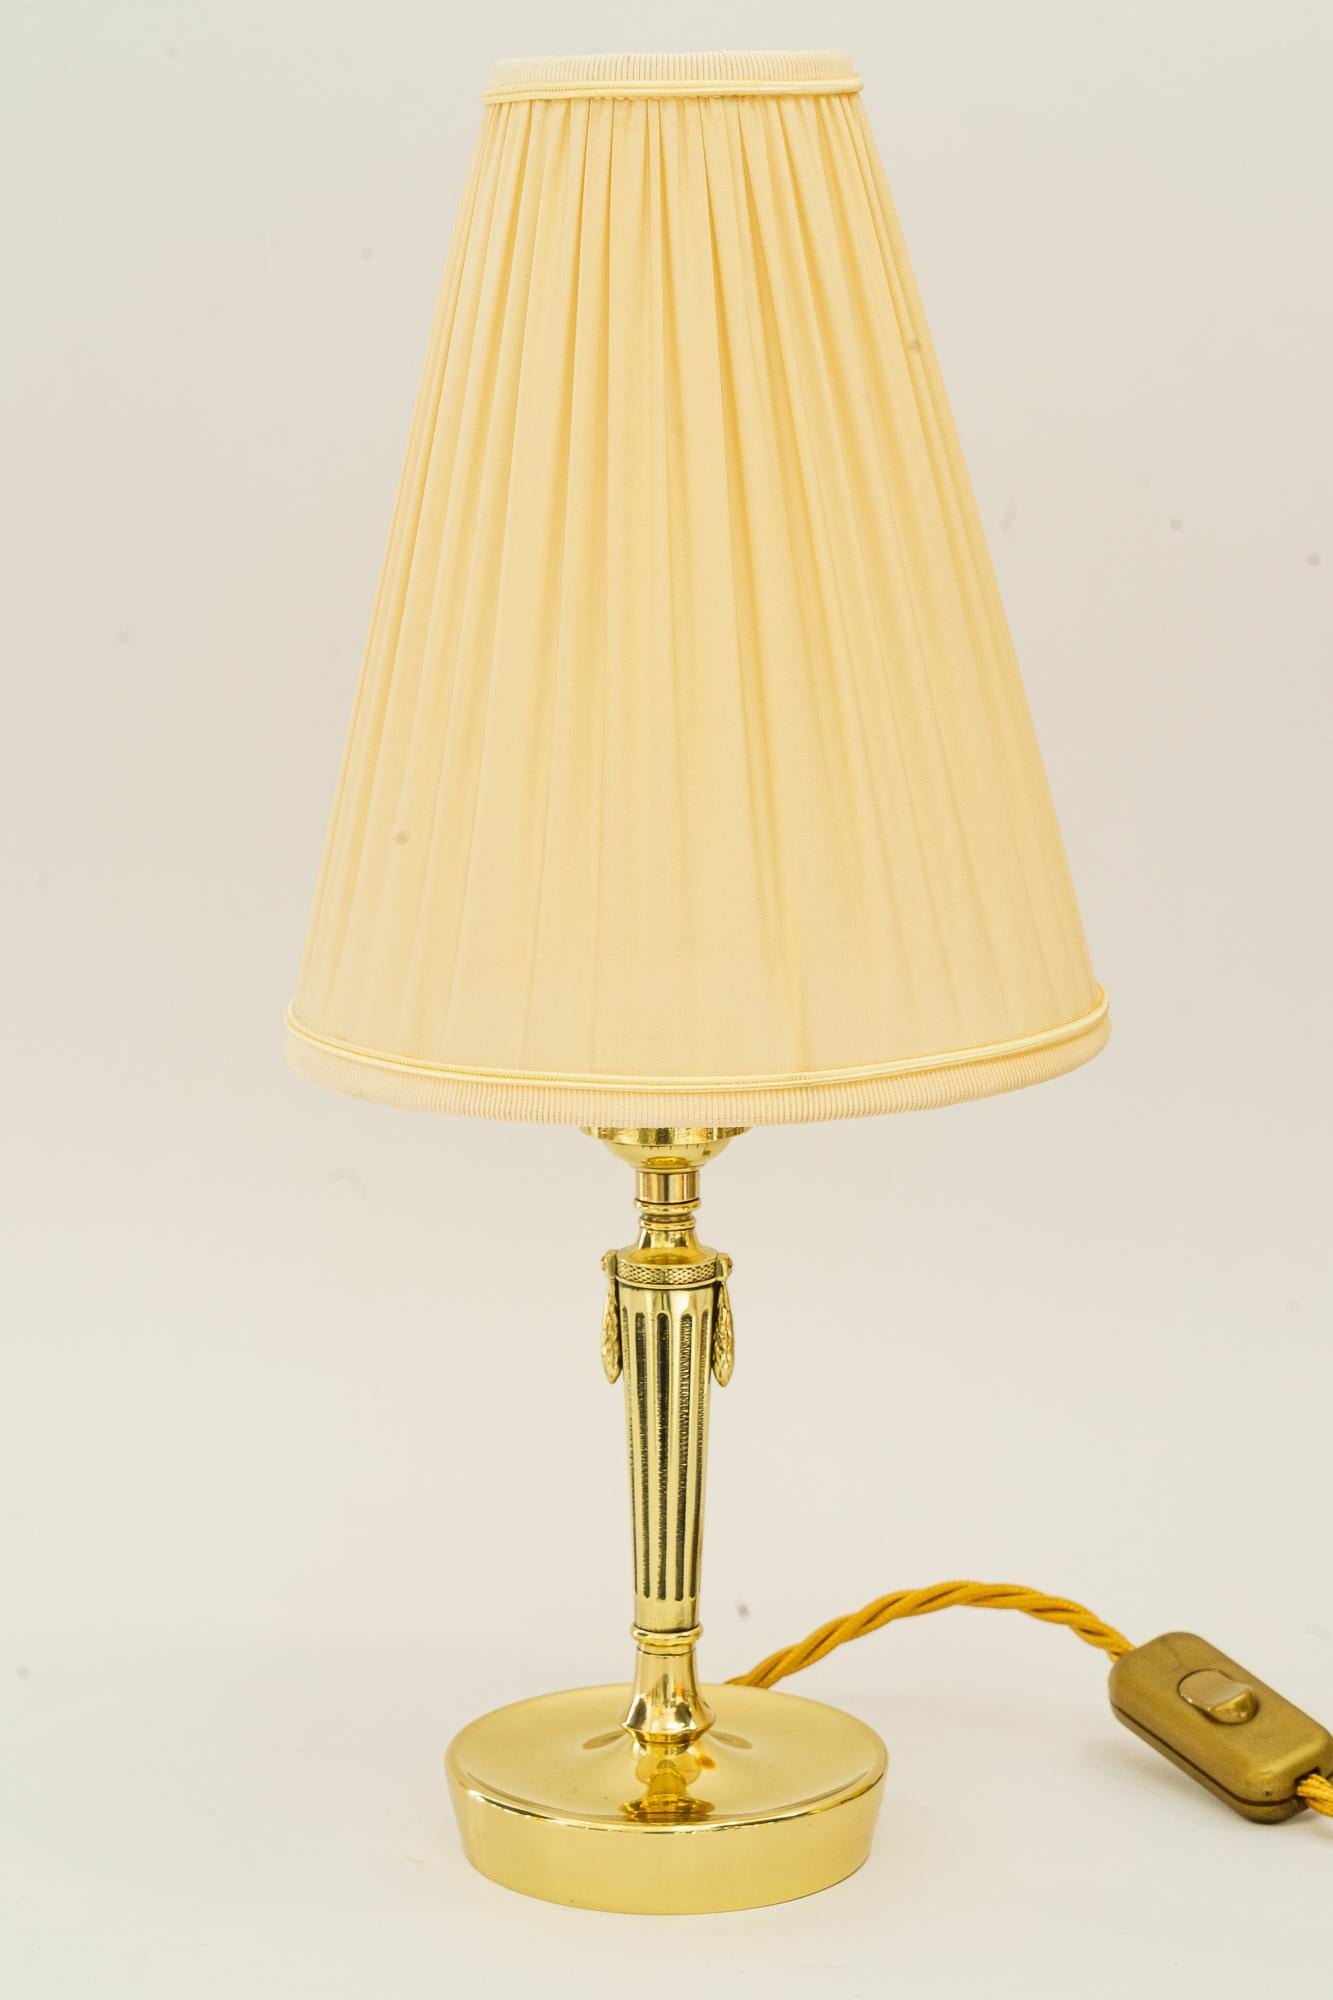 Art-Déco-Tischlampe mit Stoffschirm Vienna aus den 1920er Jahren
Messing poliert und emailliert
Der Stoffschirm wird ersetzt ( neu )
